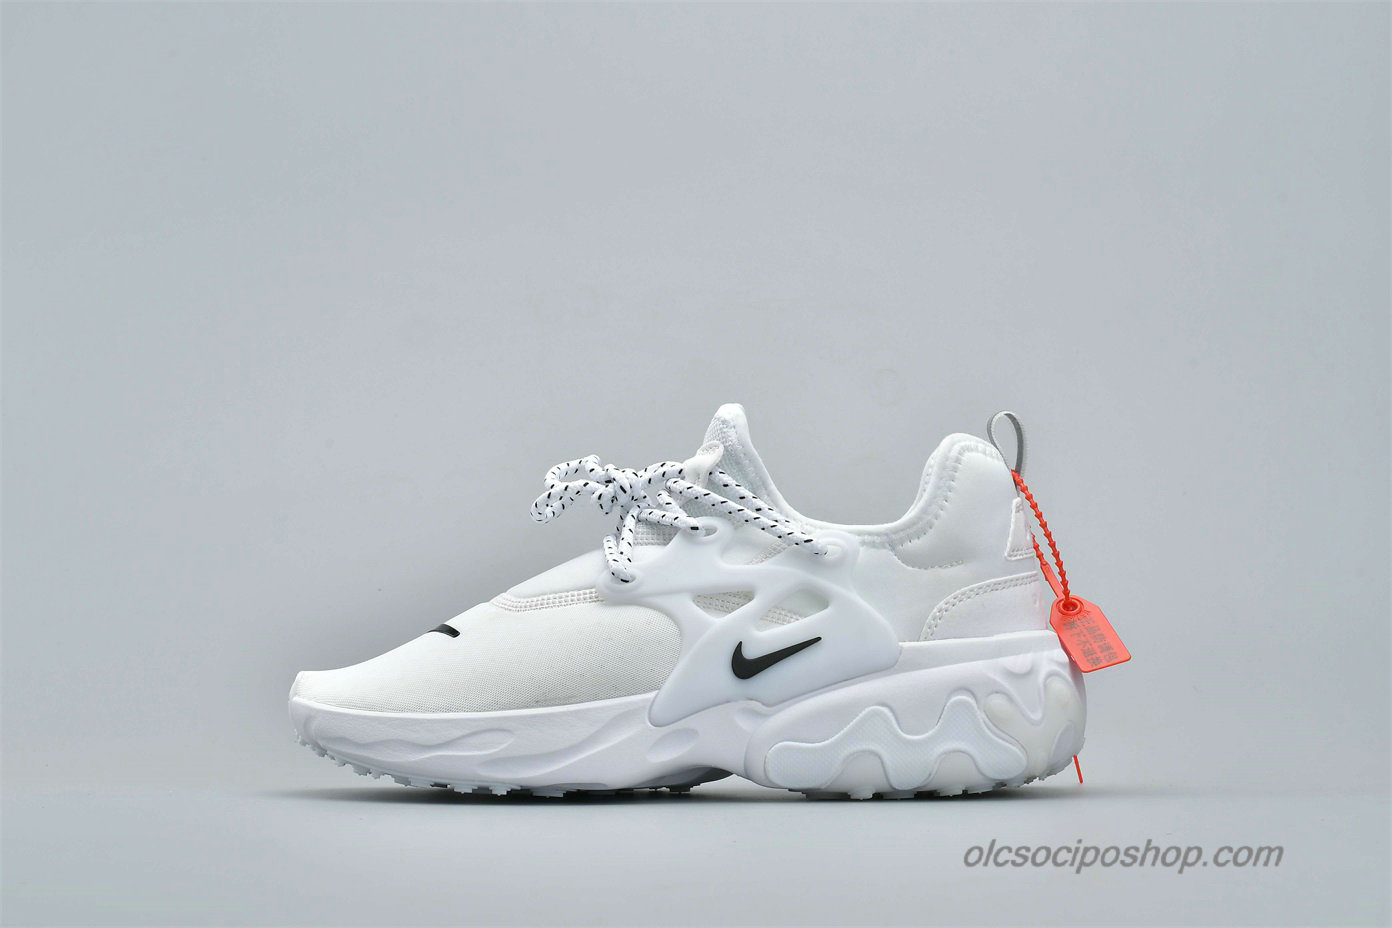 Nike Presto React Fehér/Fekete Cipők (AV2605-100) - Kattintásra bezárul